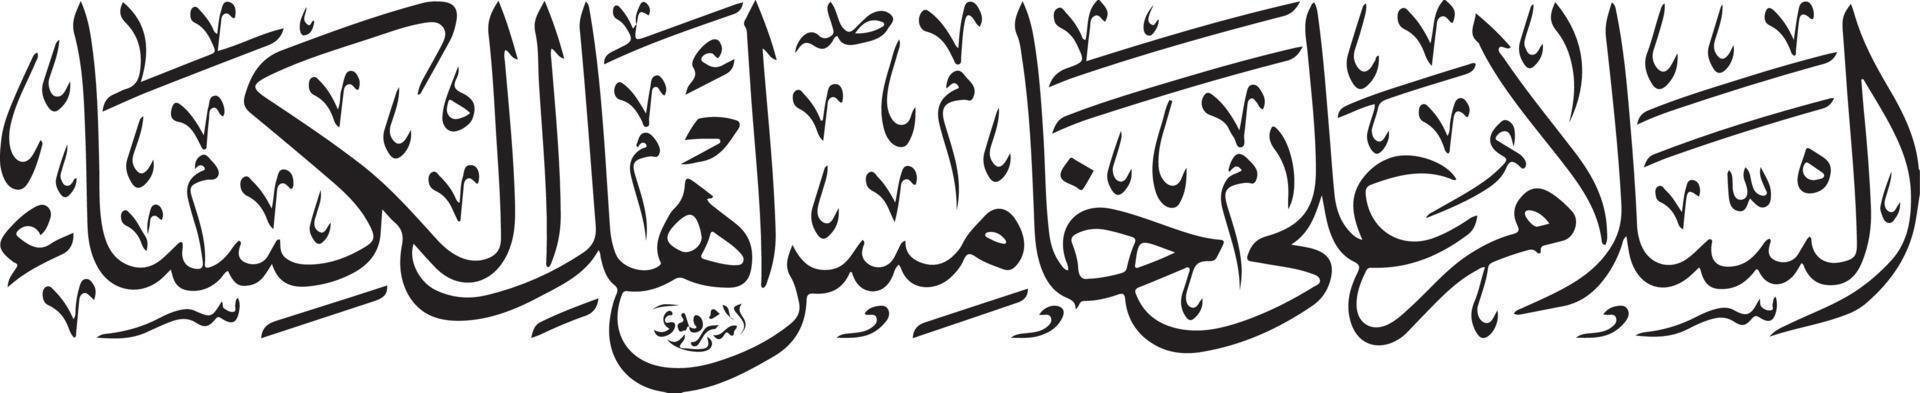 salam islamico calligrafia gratuito vettore